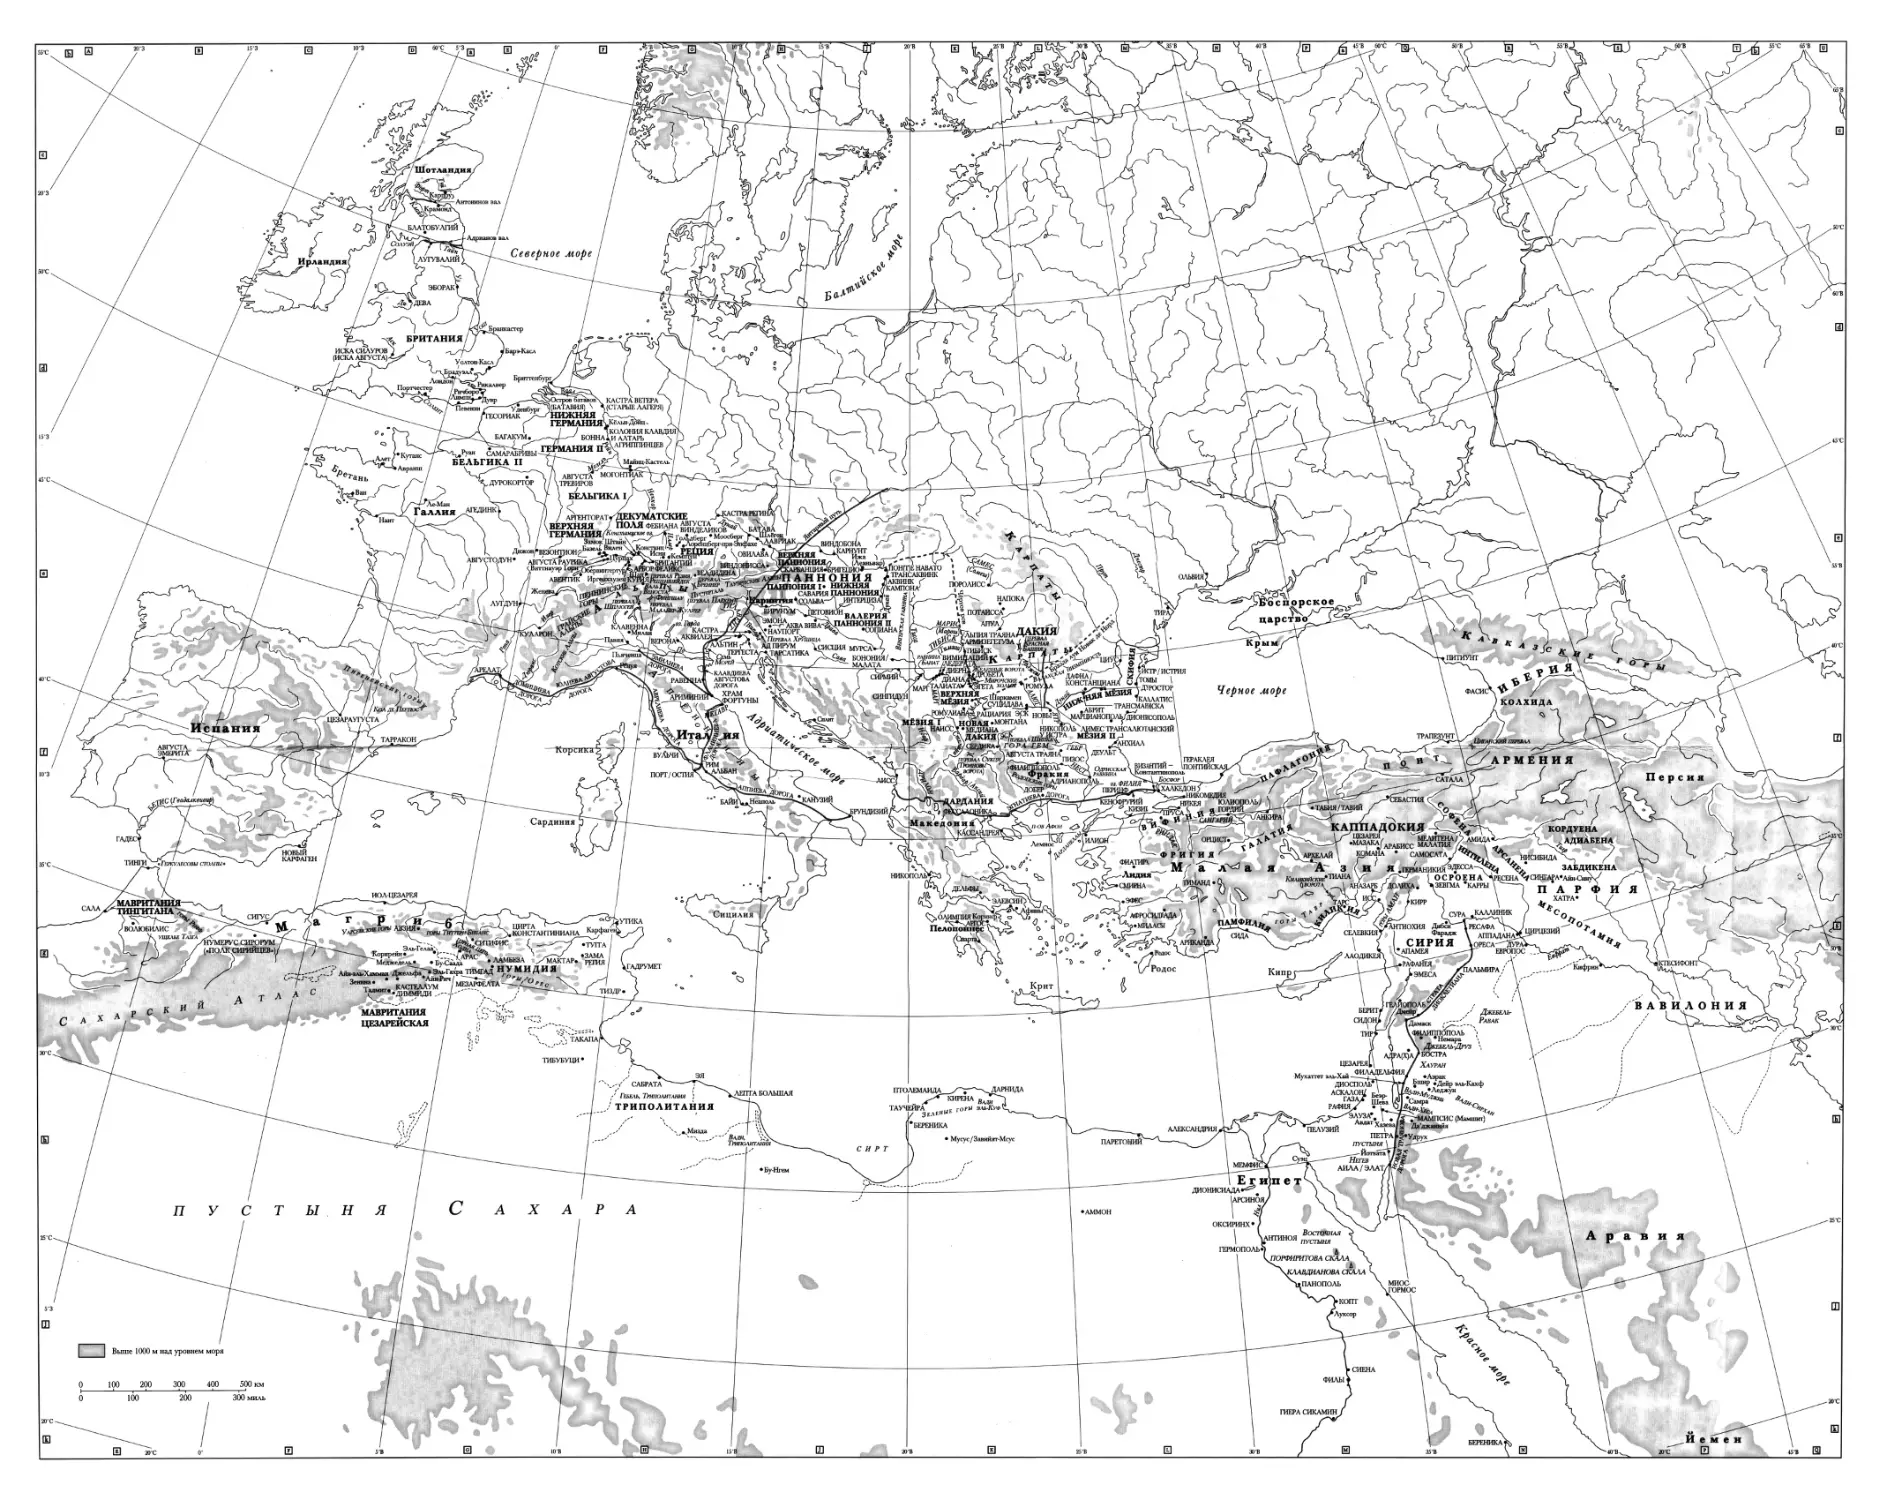 Вкладыш. Топографическая карта Римской империи